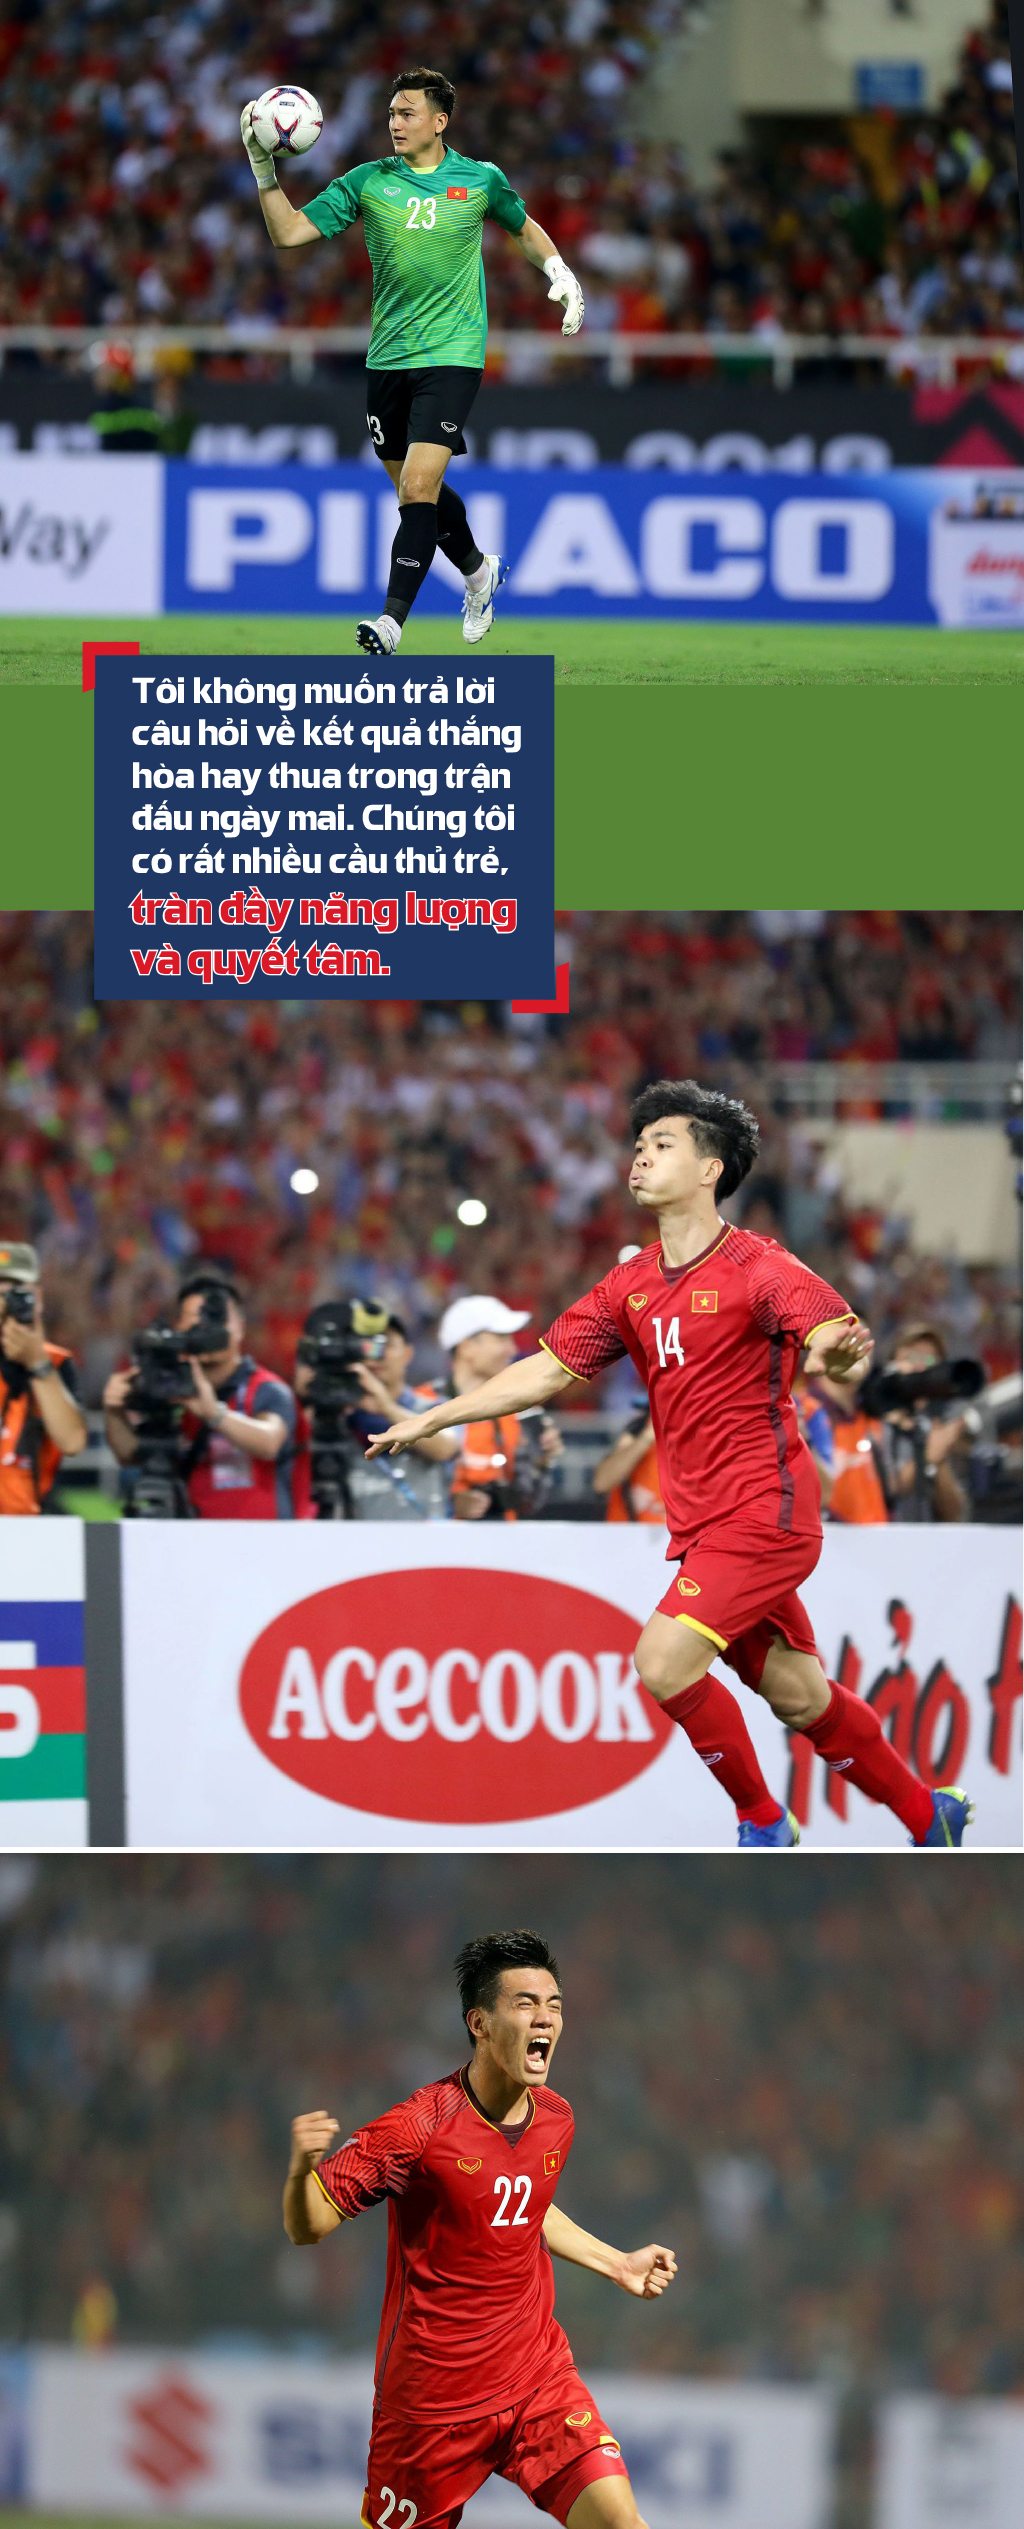 Chung kết lượt đi AFF Cup 2018, Malaysia - Việt Nam: Cuộc chiến không khoan nhượng ảnh 2